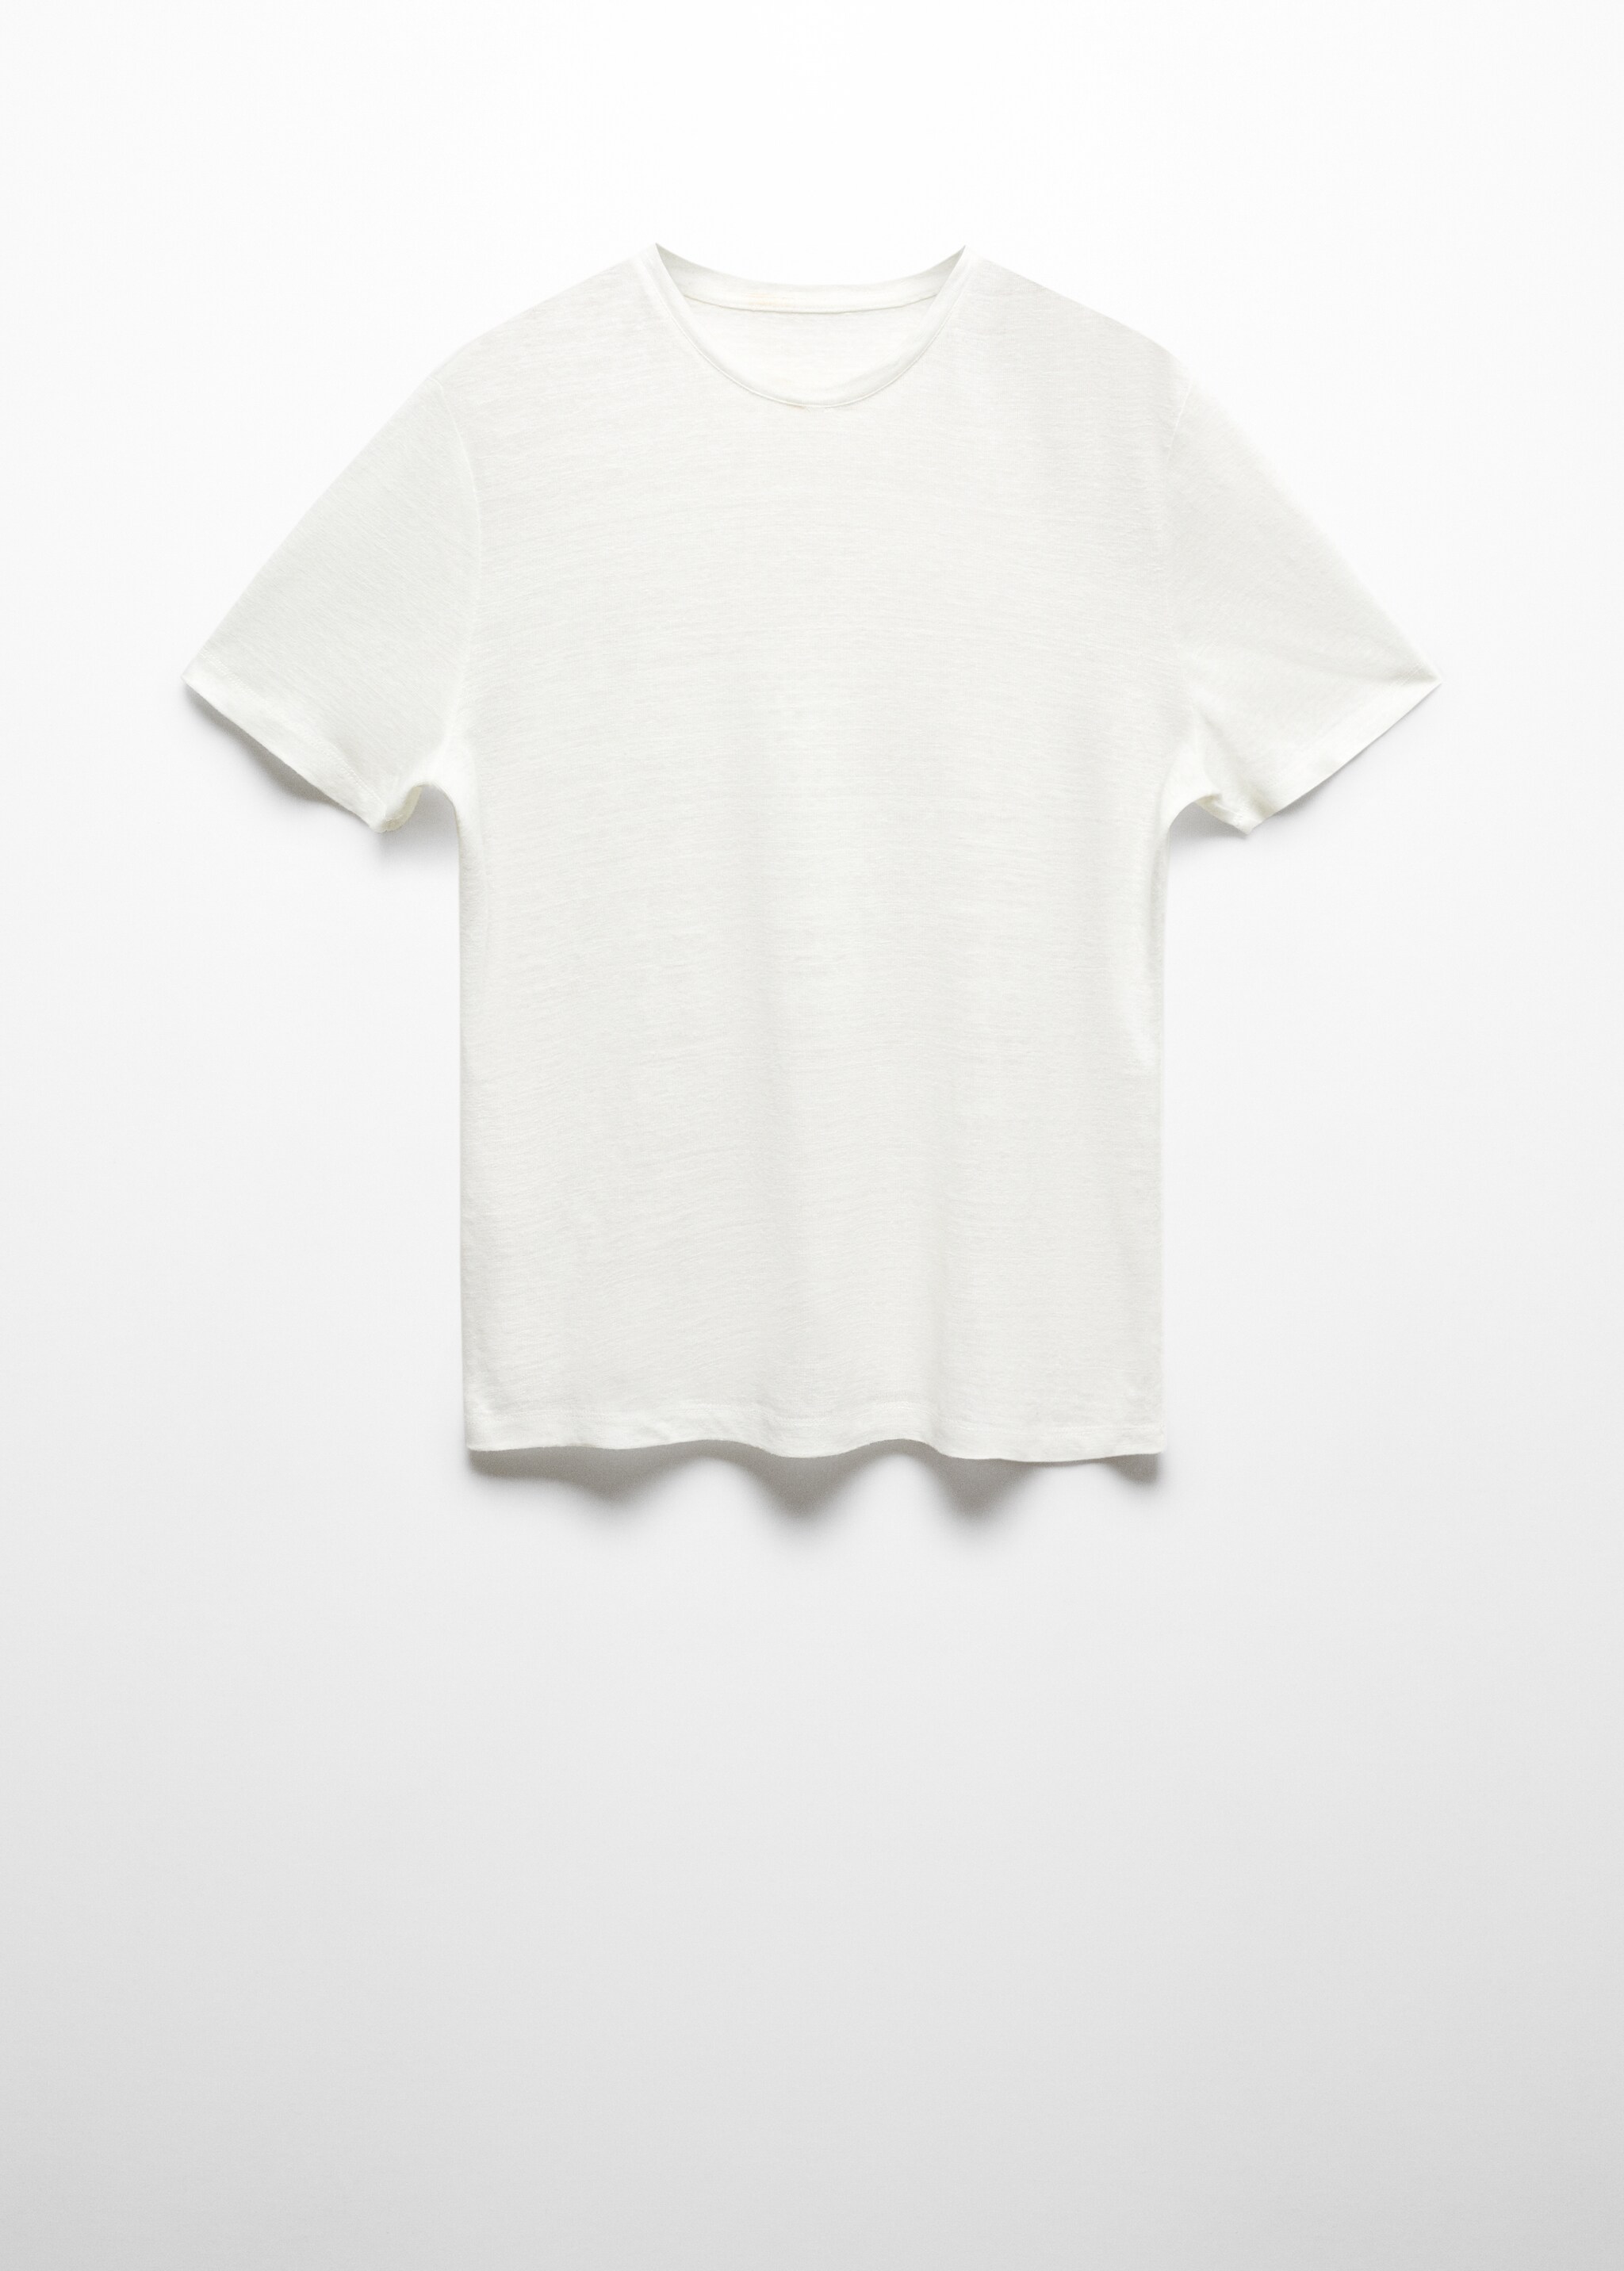 T-shirt slim fit de 100% linho - Artigo sem modelo